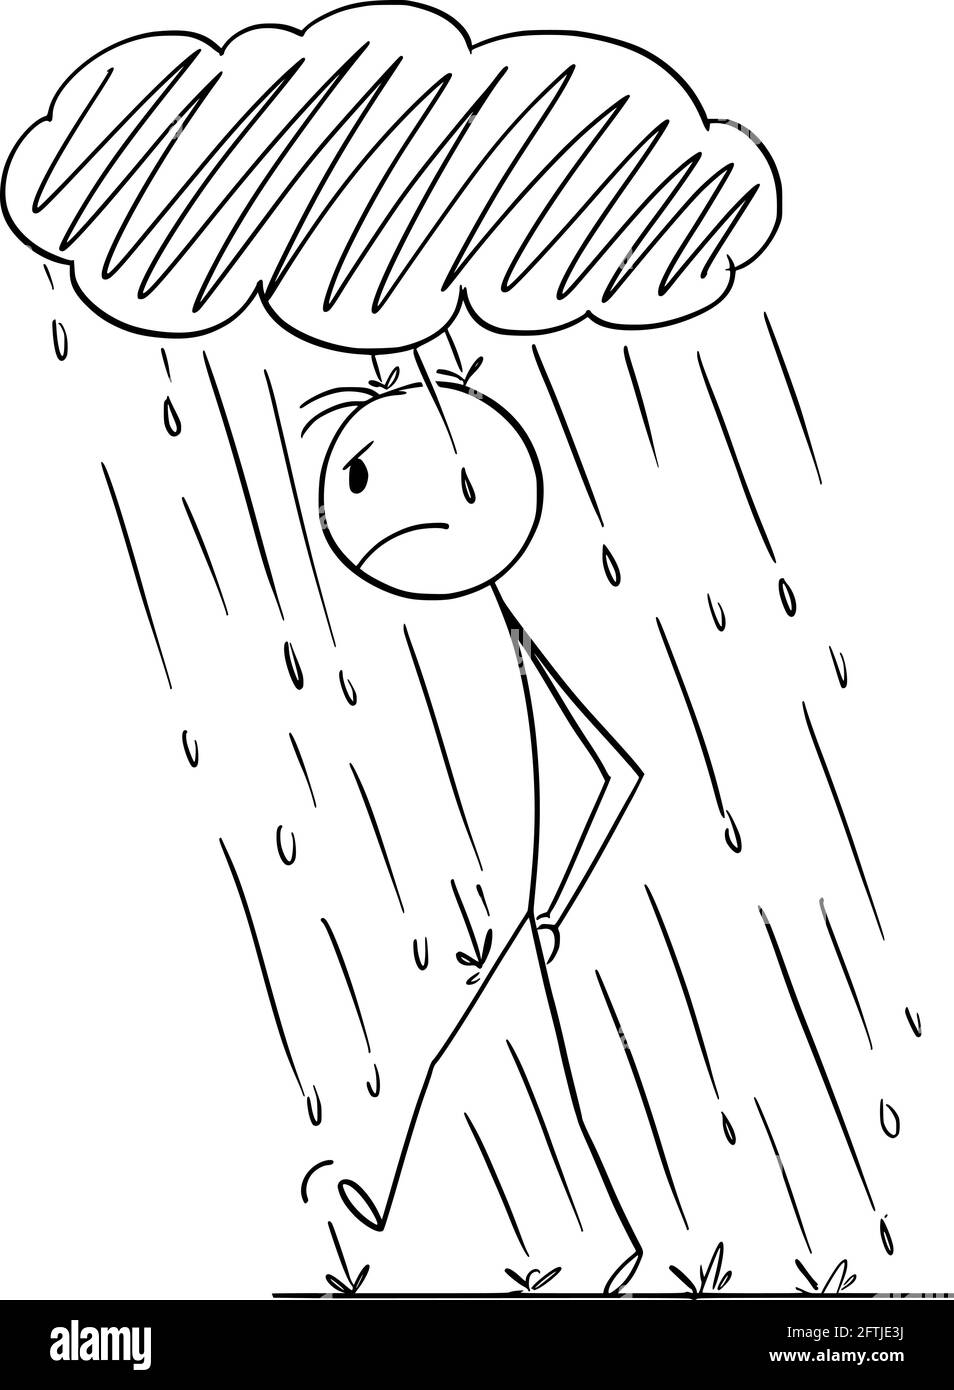 Frustrata persona arrabbiata camminare in Personal Rain con nuvola di tempesta piccola sopra la testa , Vector Cartoon Stick Figura Illustrazione Vettoriale